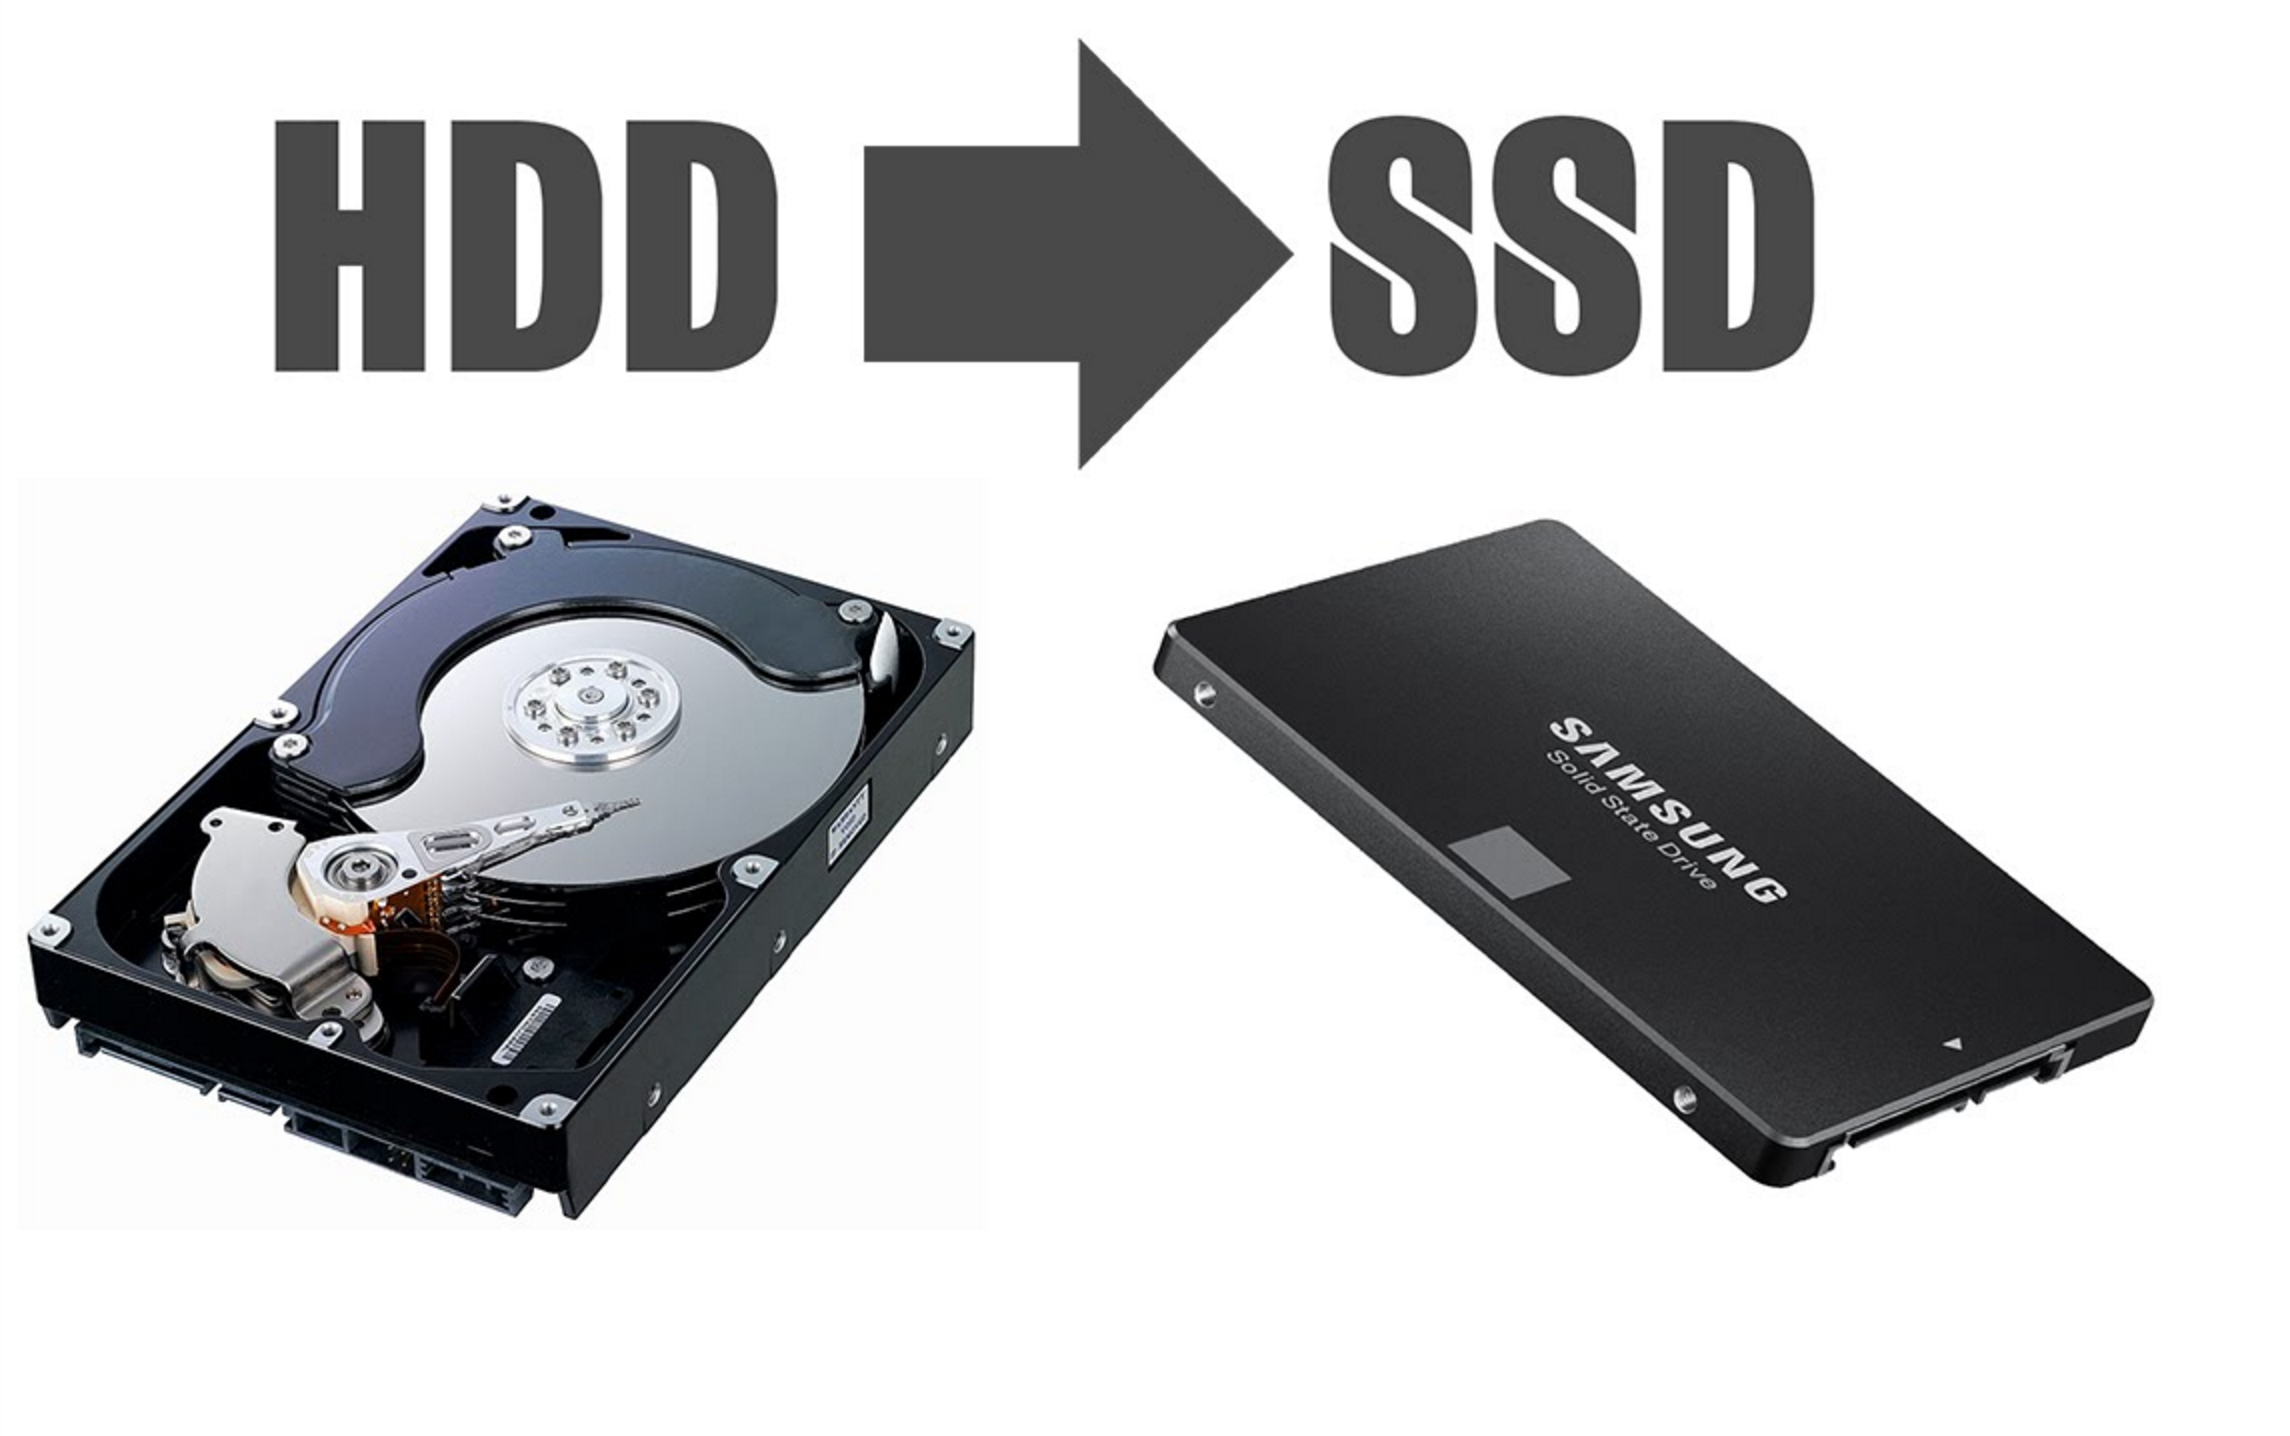 Beneficios de actualizar a SSD – ¿Por qué actualizar a SSD?